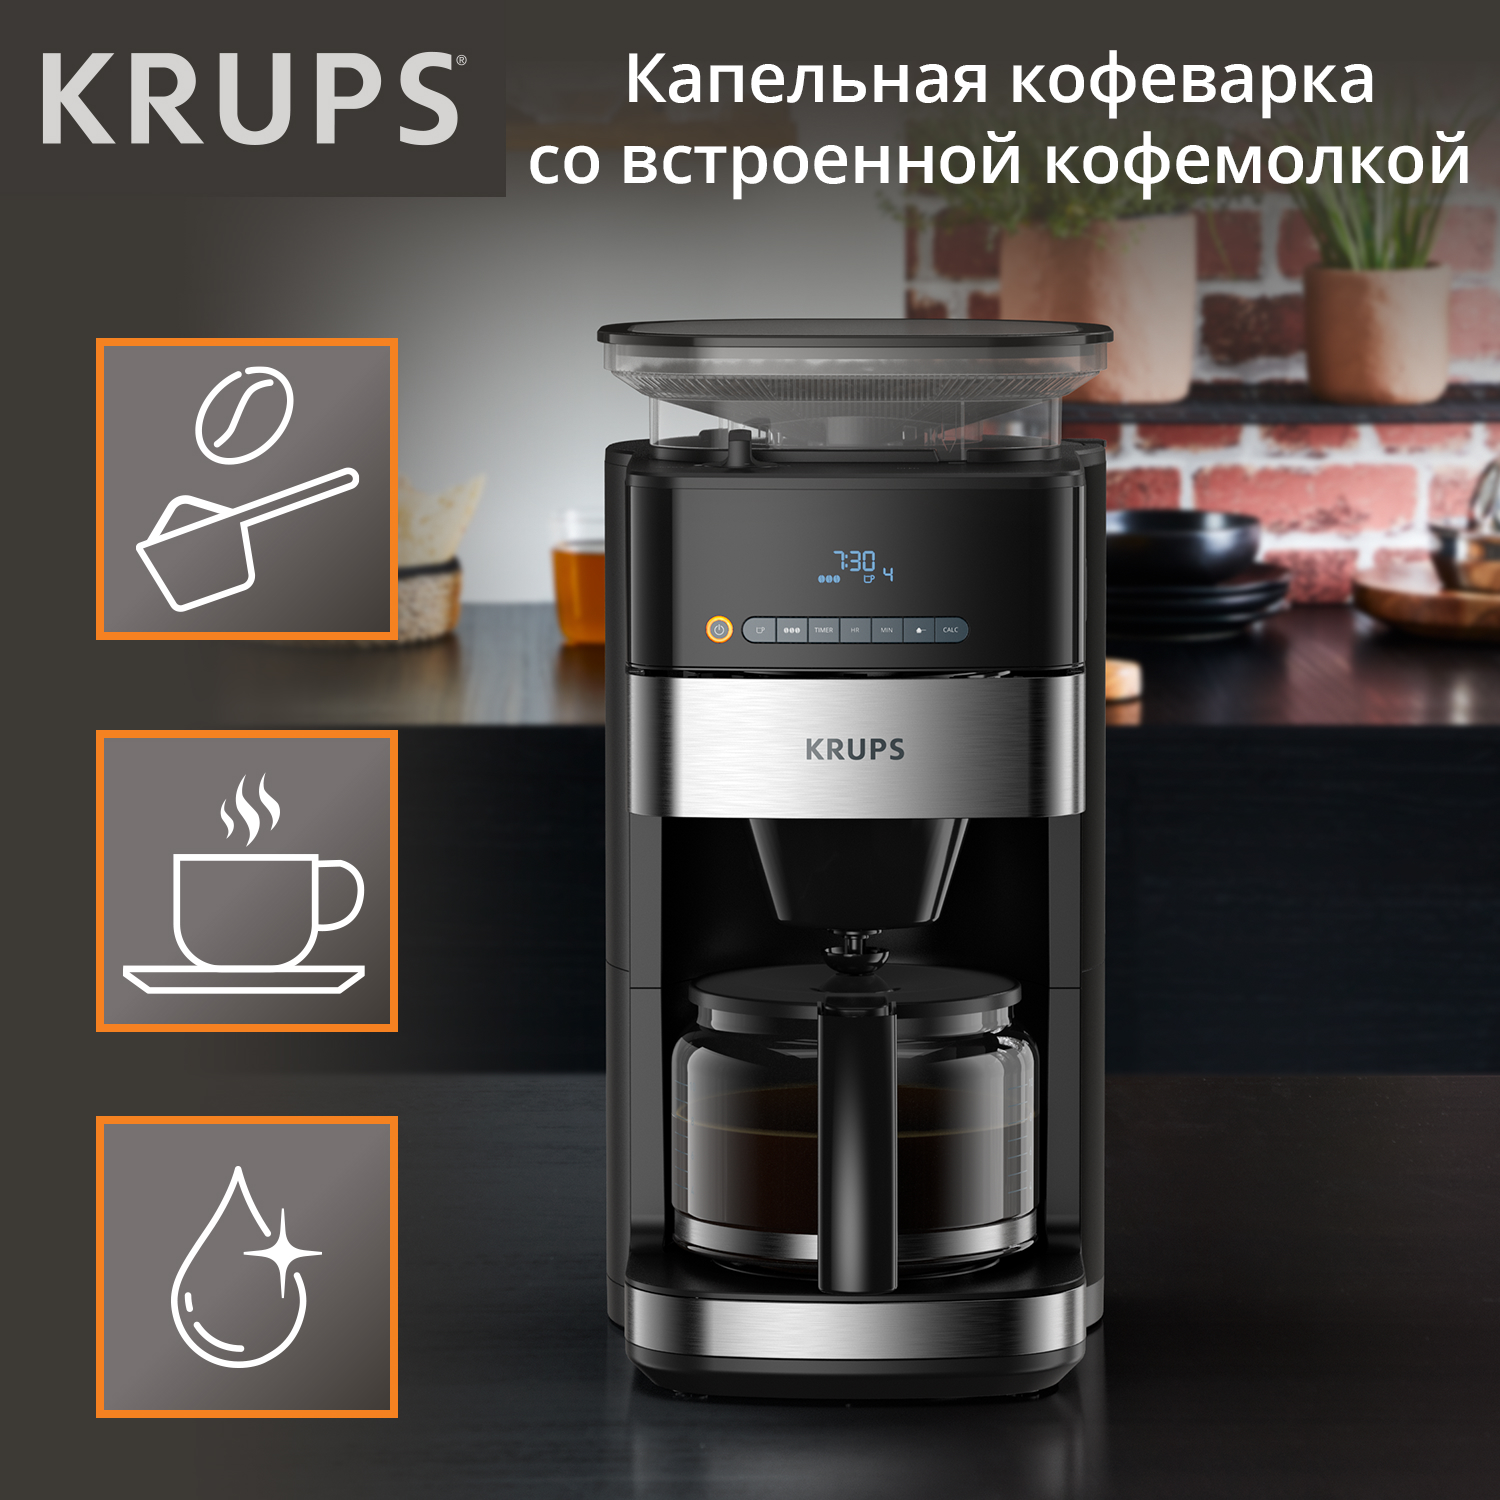 Кофеварка капельного типа Krups Grind Aroma KM832810 с кофемолкой, черный/серебристый капельная кофеварка grind aroma km832810